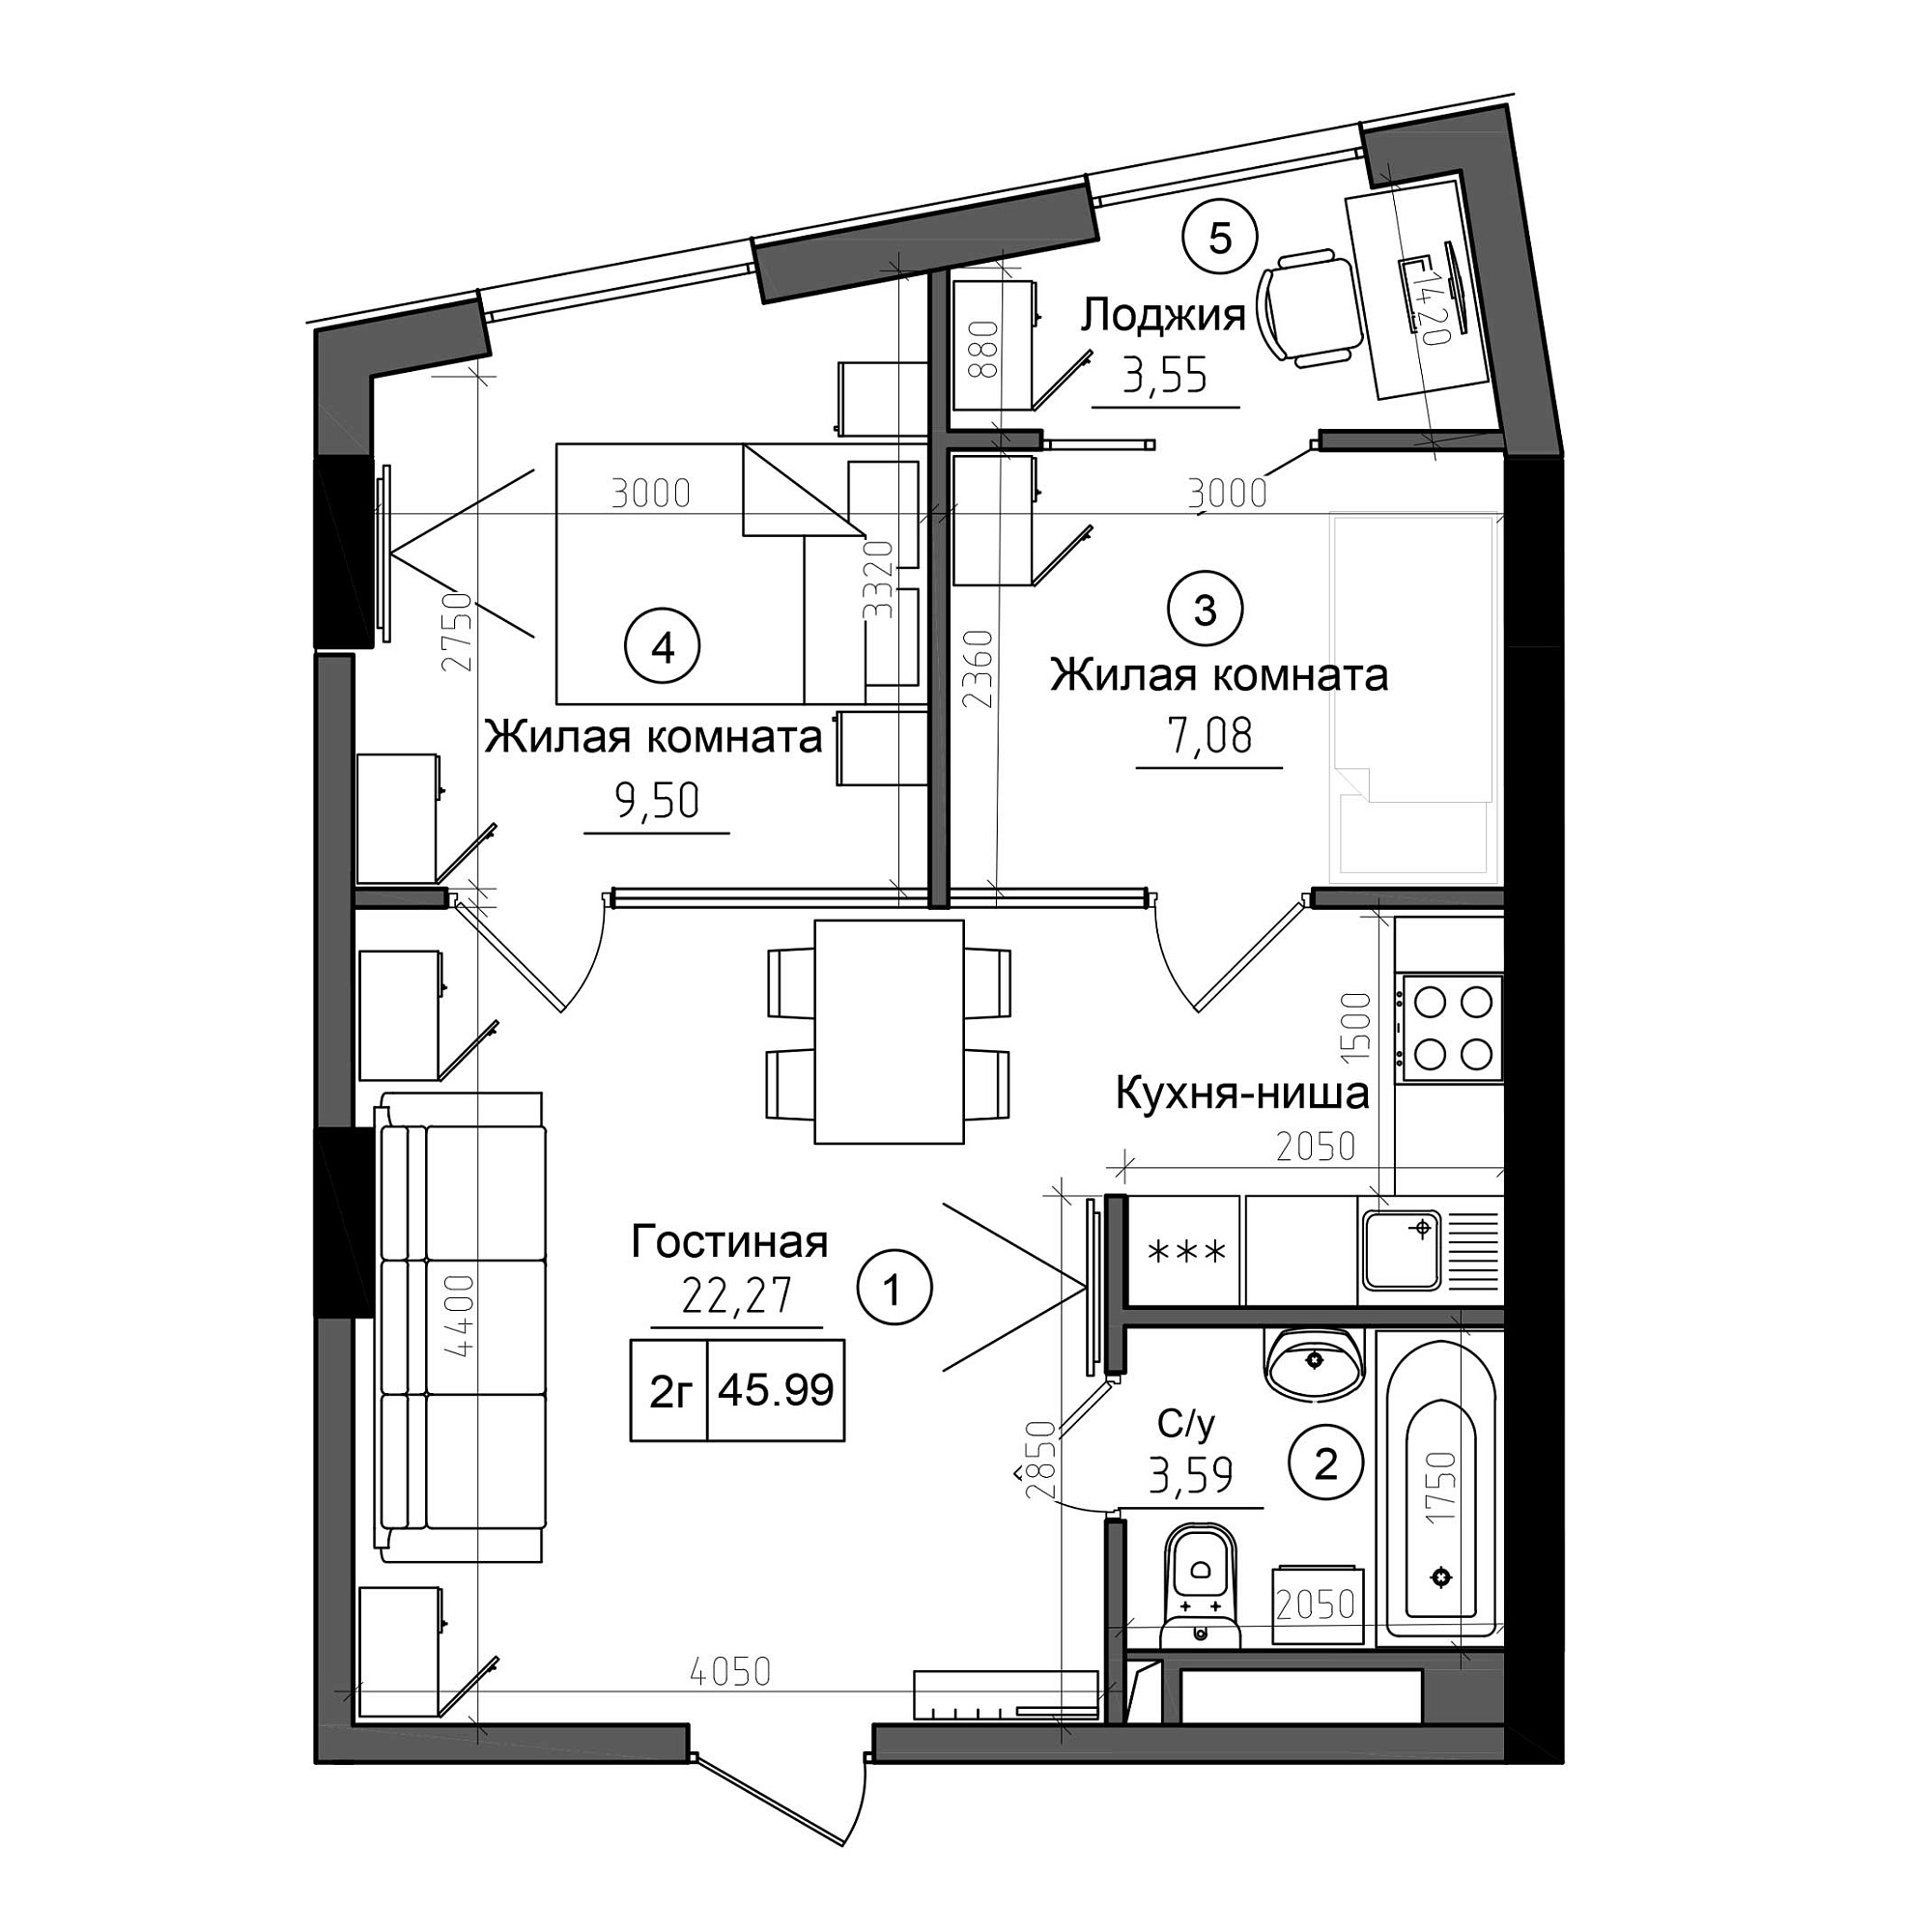 Планування 2-к квартира площею 45.99м2, AB-20-07/0001а.